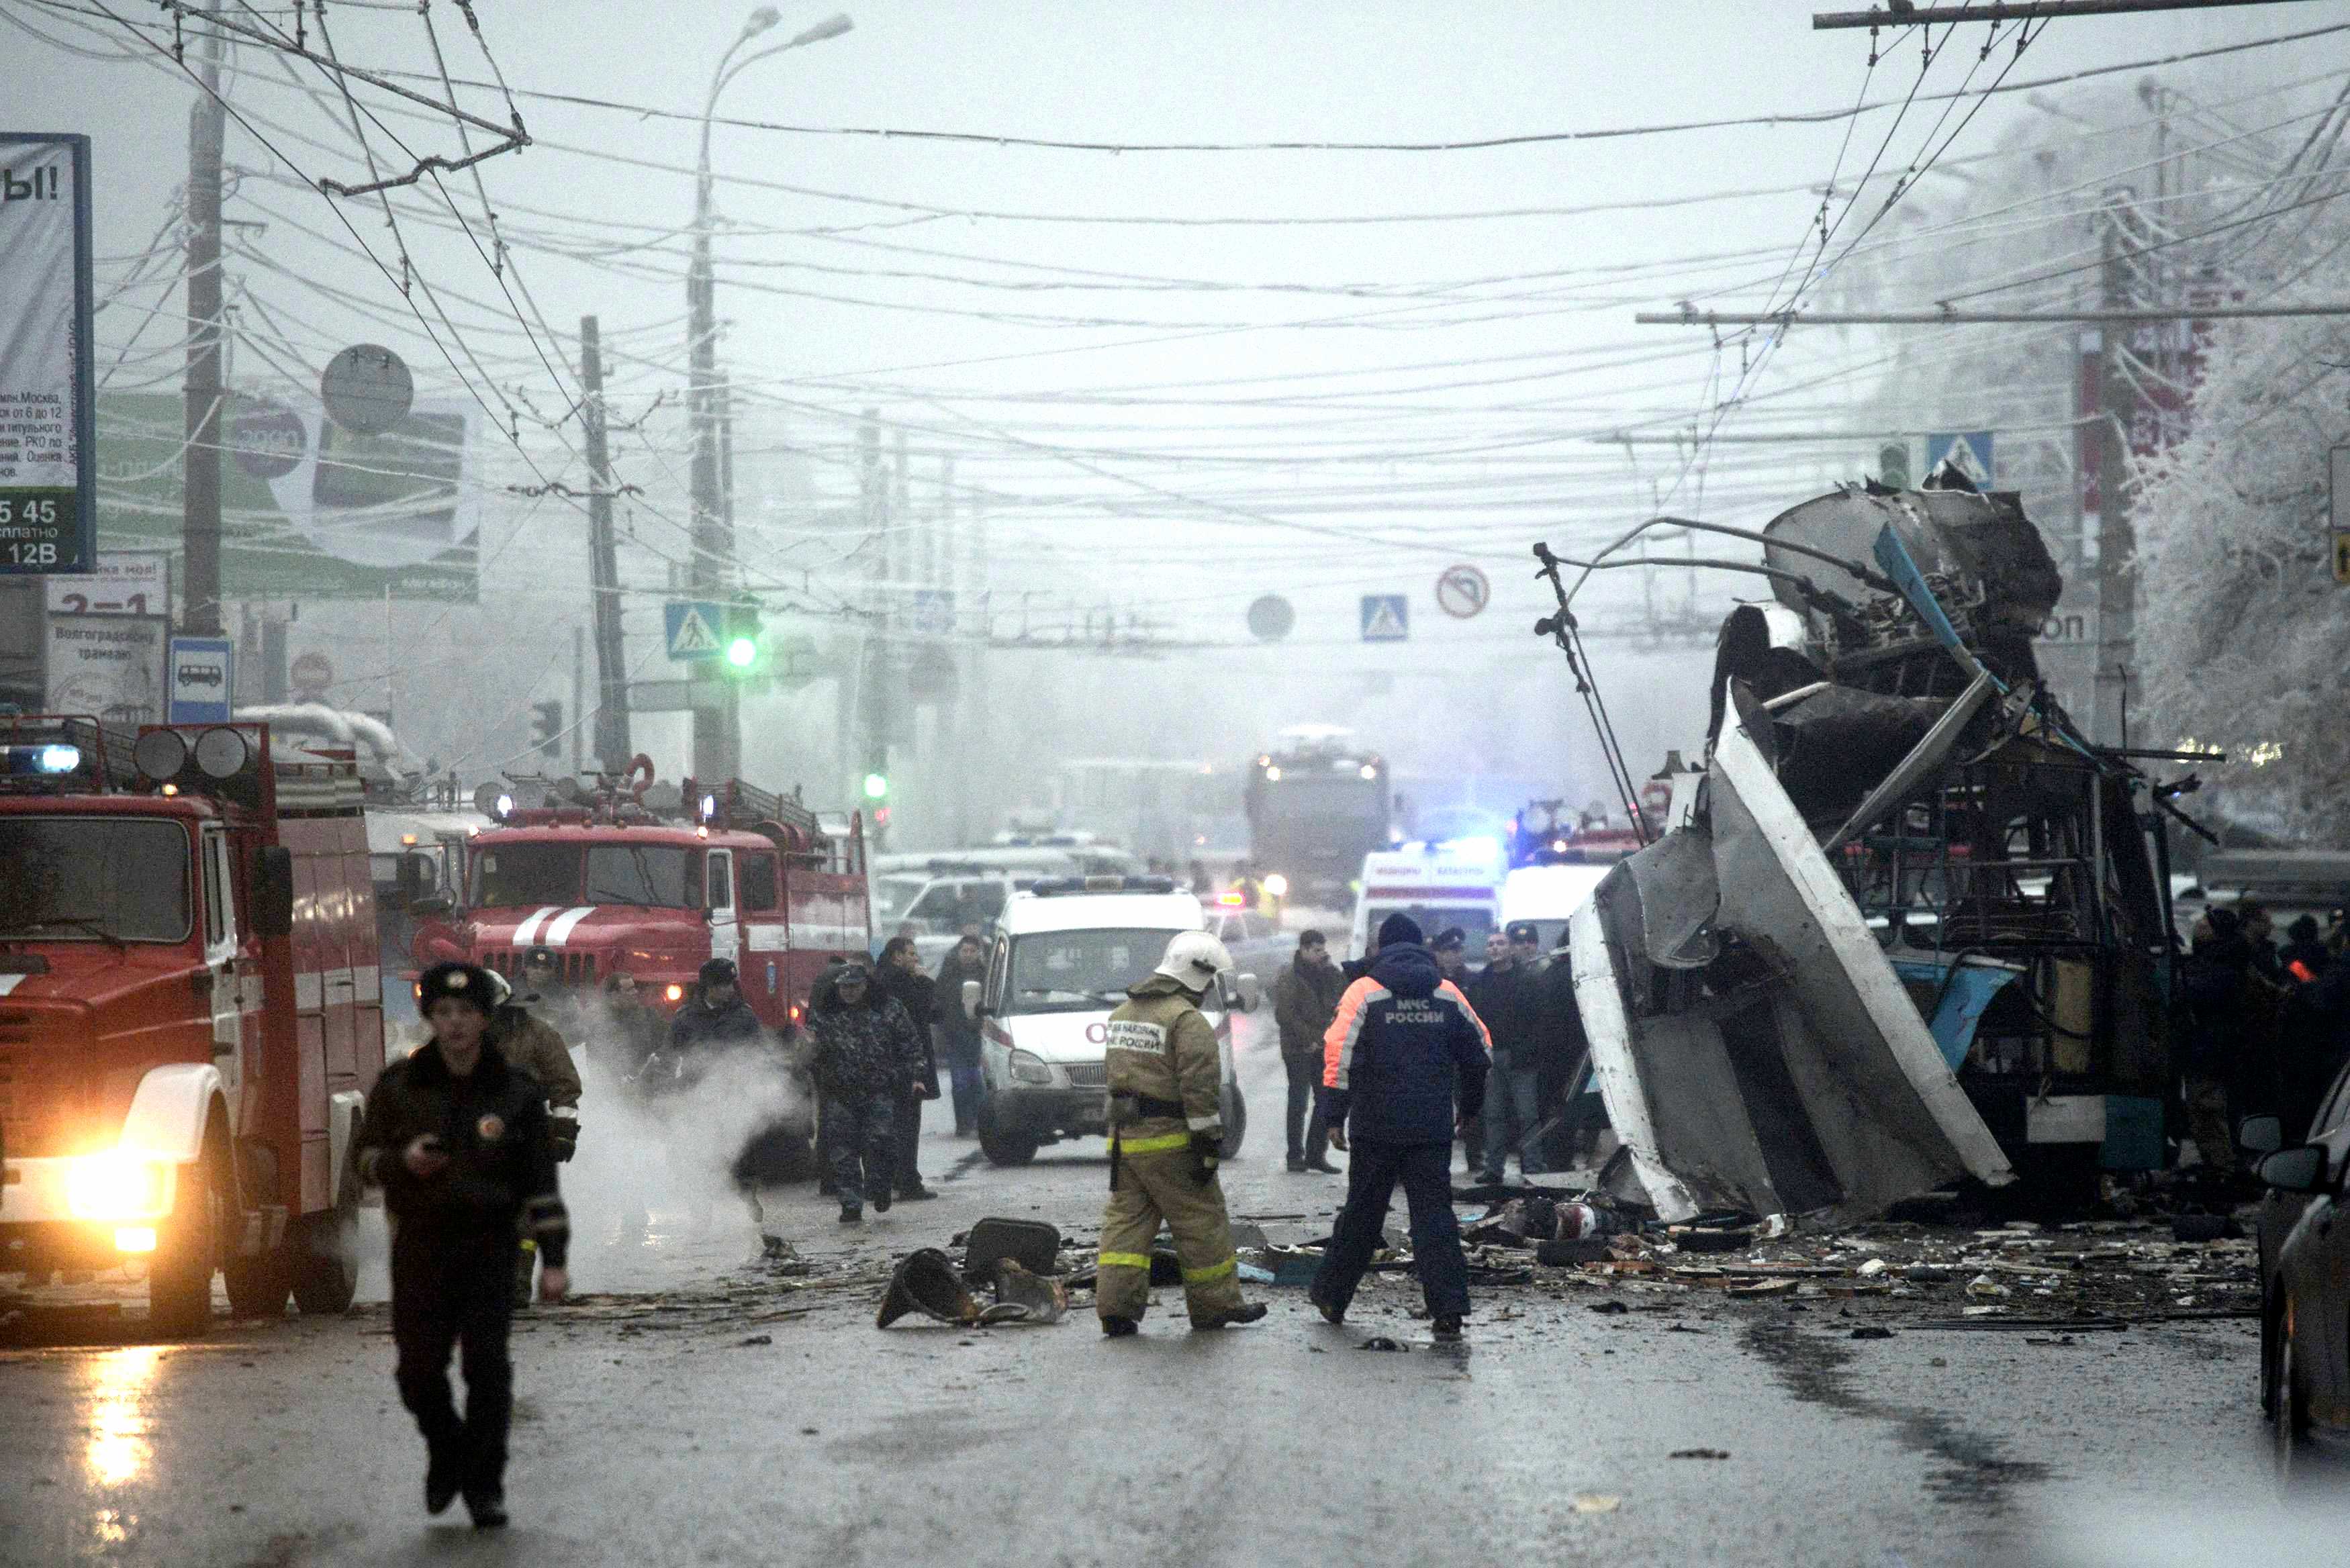 4 декабря 2007 год. Теракт в троллейбусе в Волгограде 30 декабря. Взрыв троллейбуса в Волгограде. Взрыв троллейбуса в Волгограде 30 декабря 2013.